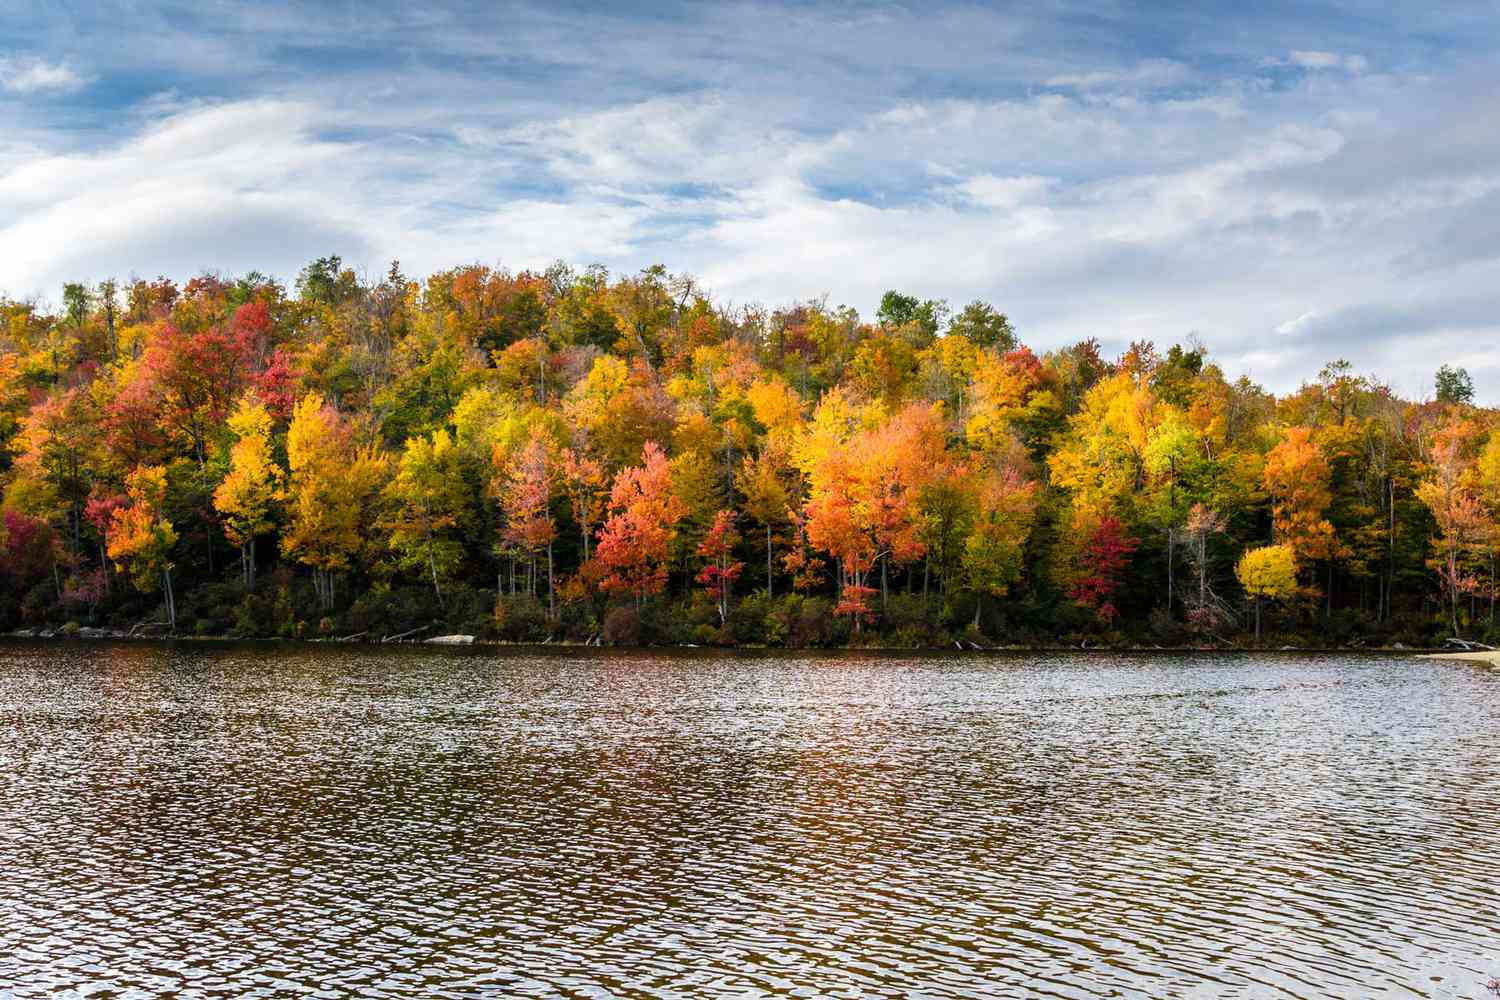 Rives boisées d'un lac de montagne en automne.  Feuillage d'automne vibrant.